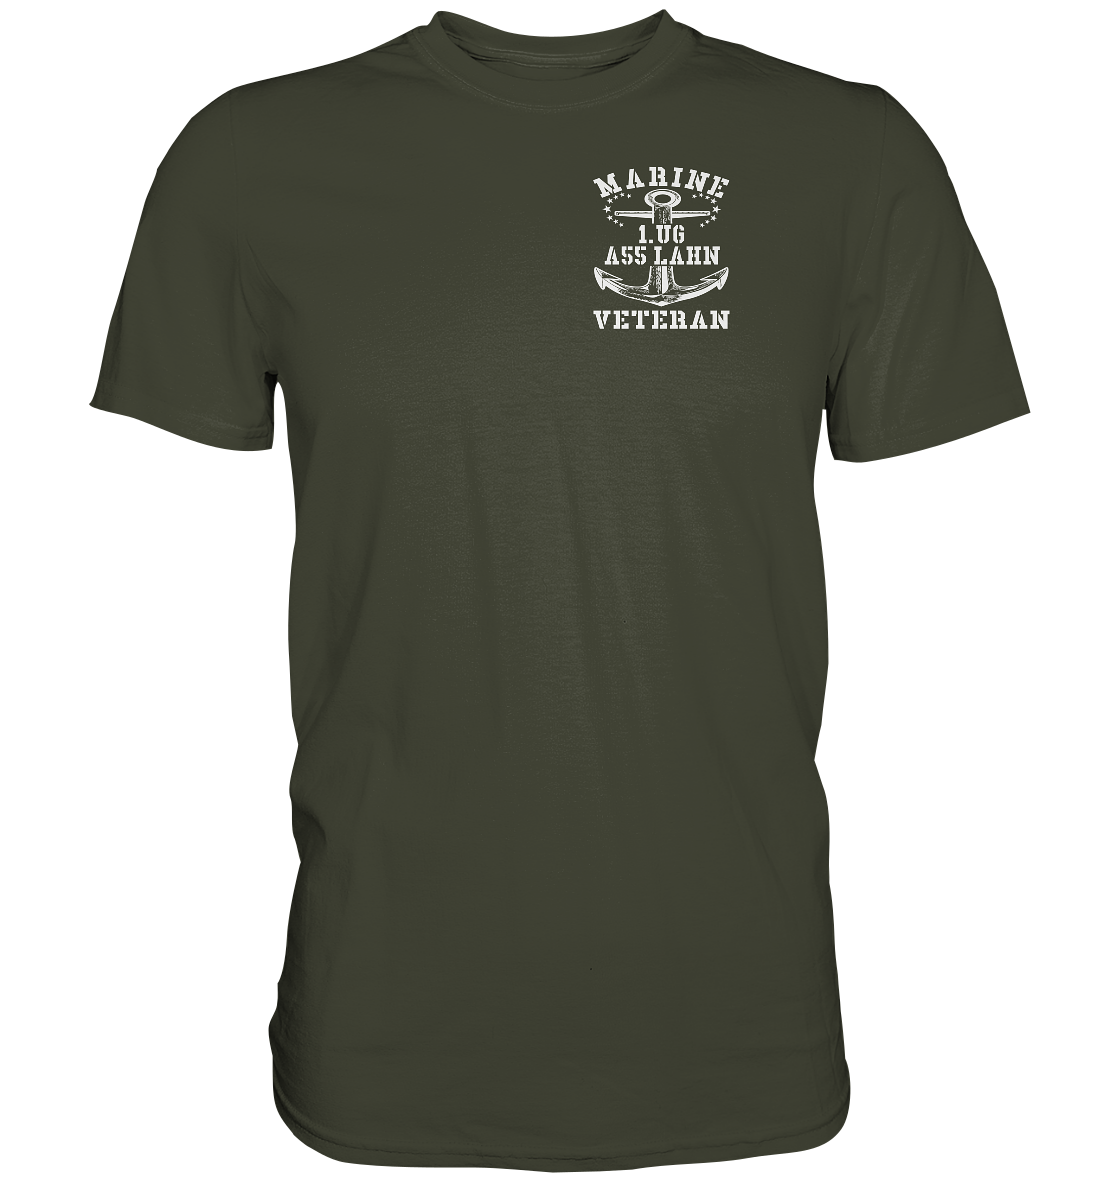 Marine Veteran 1.UG A55 LAHN - Premium Shirt